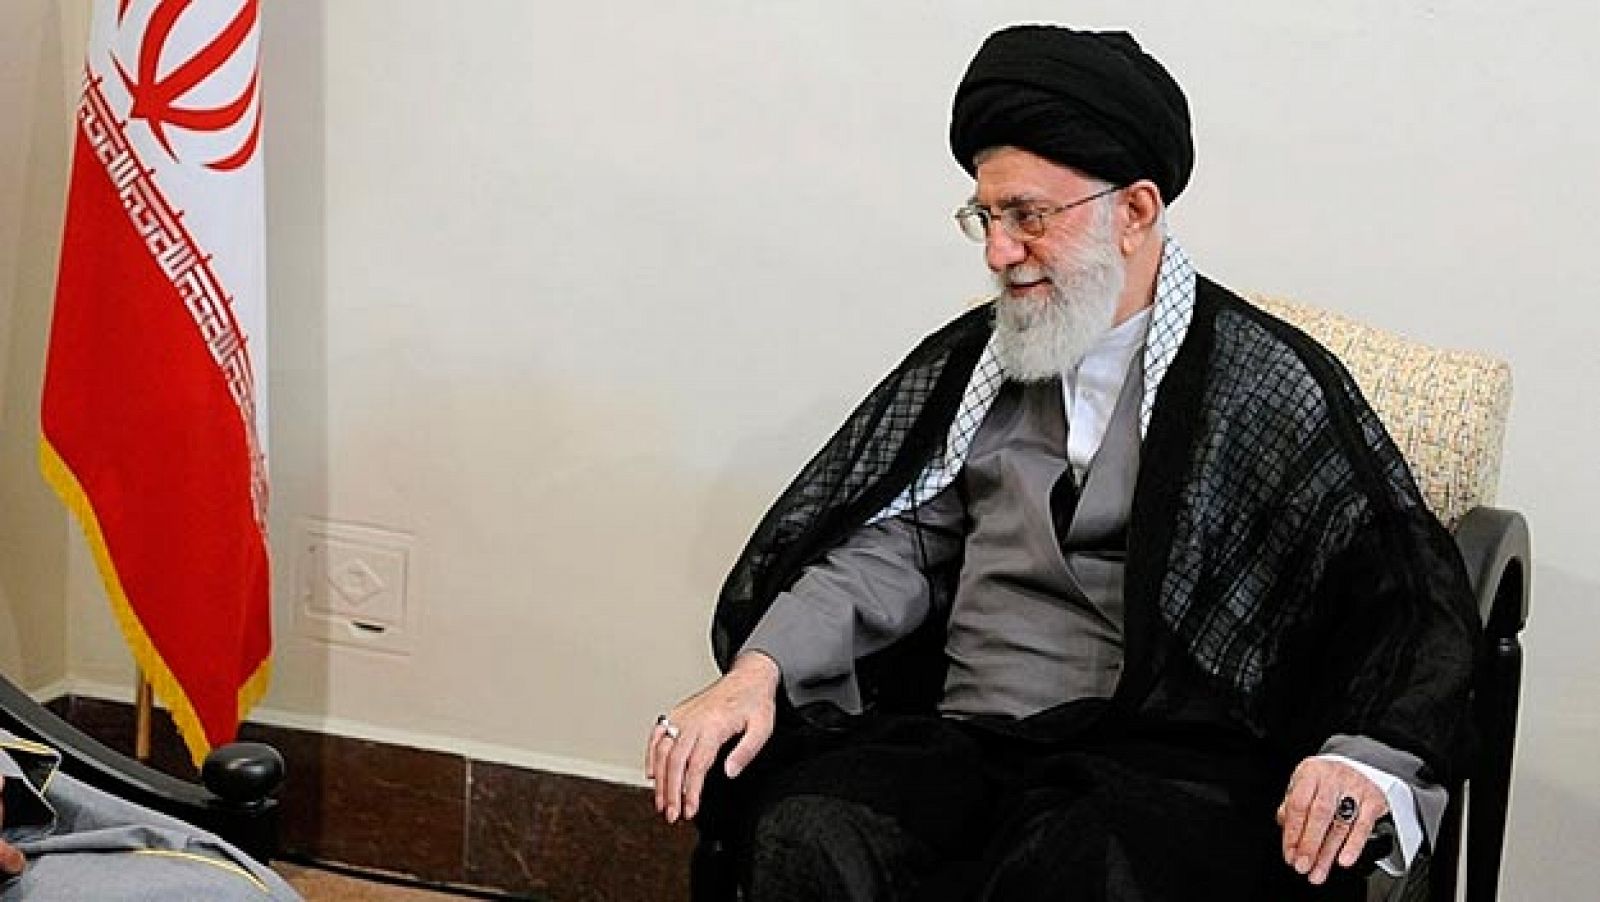 El líder supremo de irán, Alí jamenei, en una fotografía de archivo.